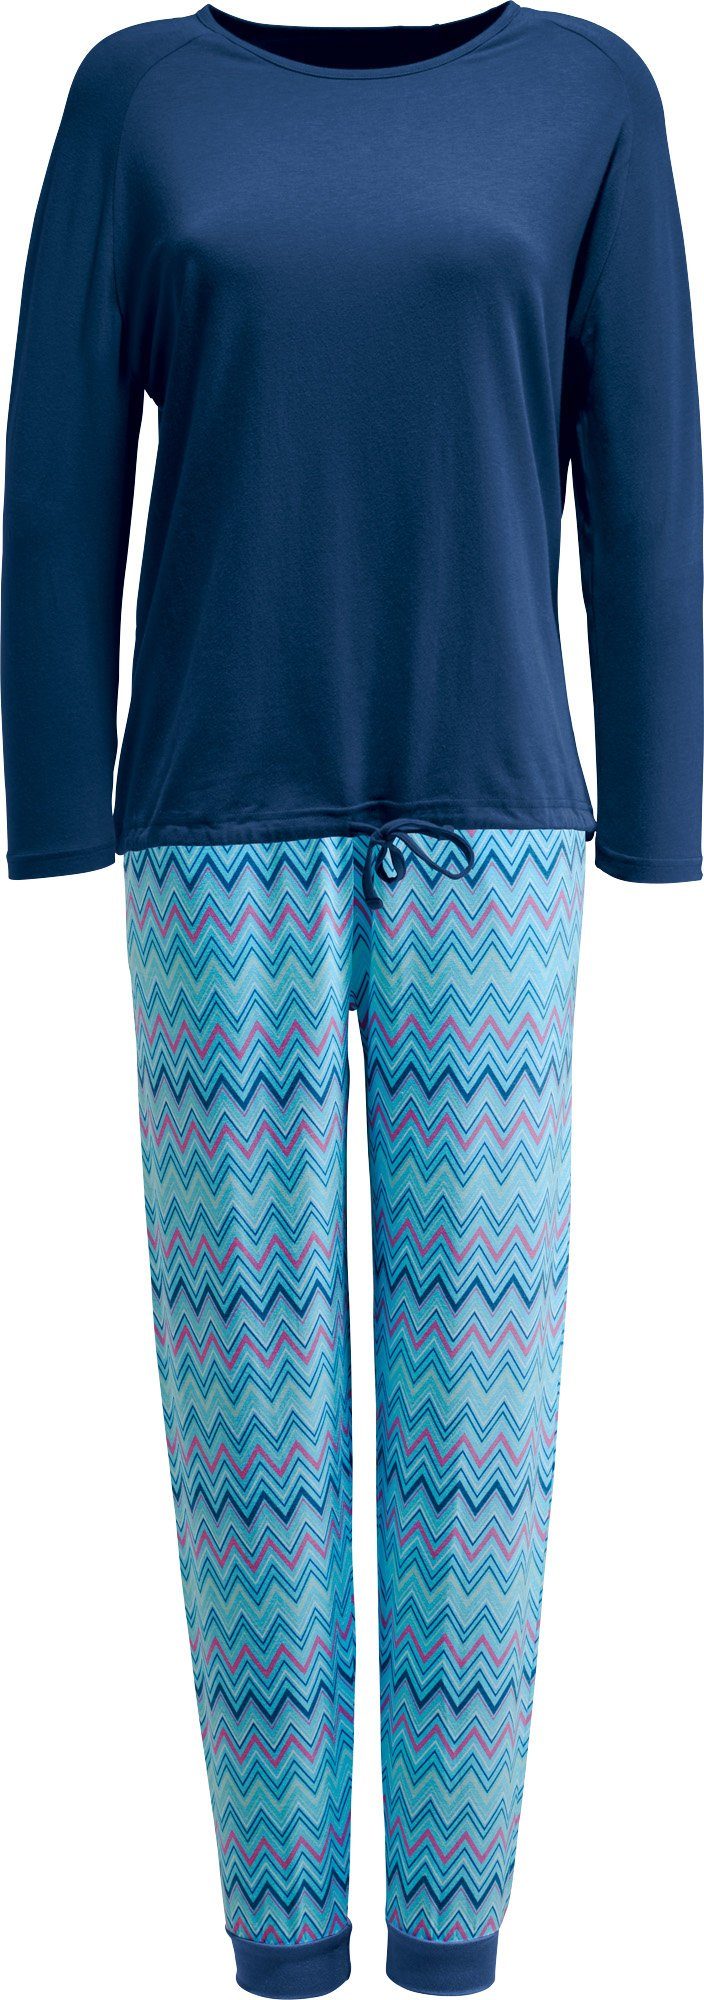 Erwin Müller Pyjama Damen-Schlafanzug Single-Jersey gemustert blau